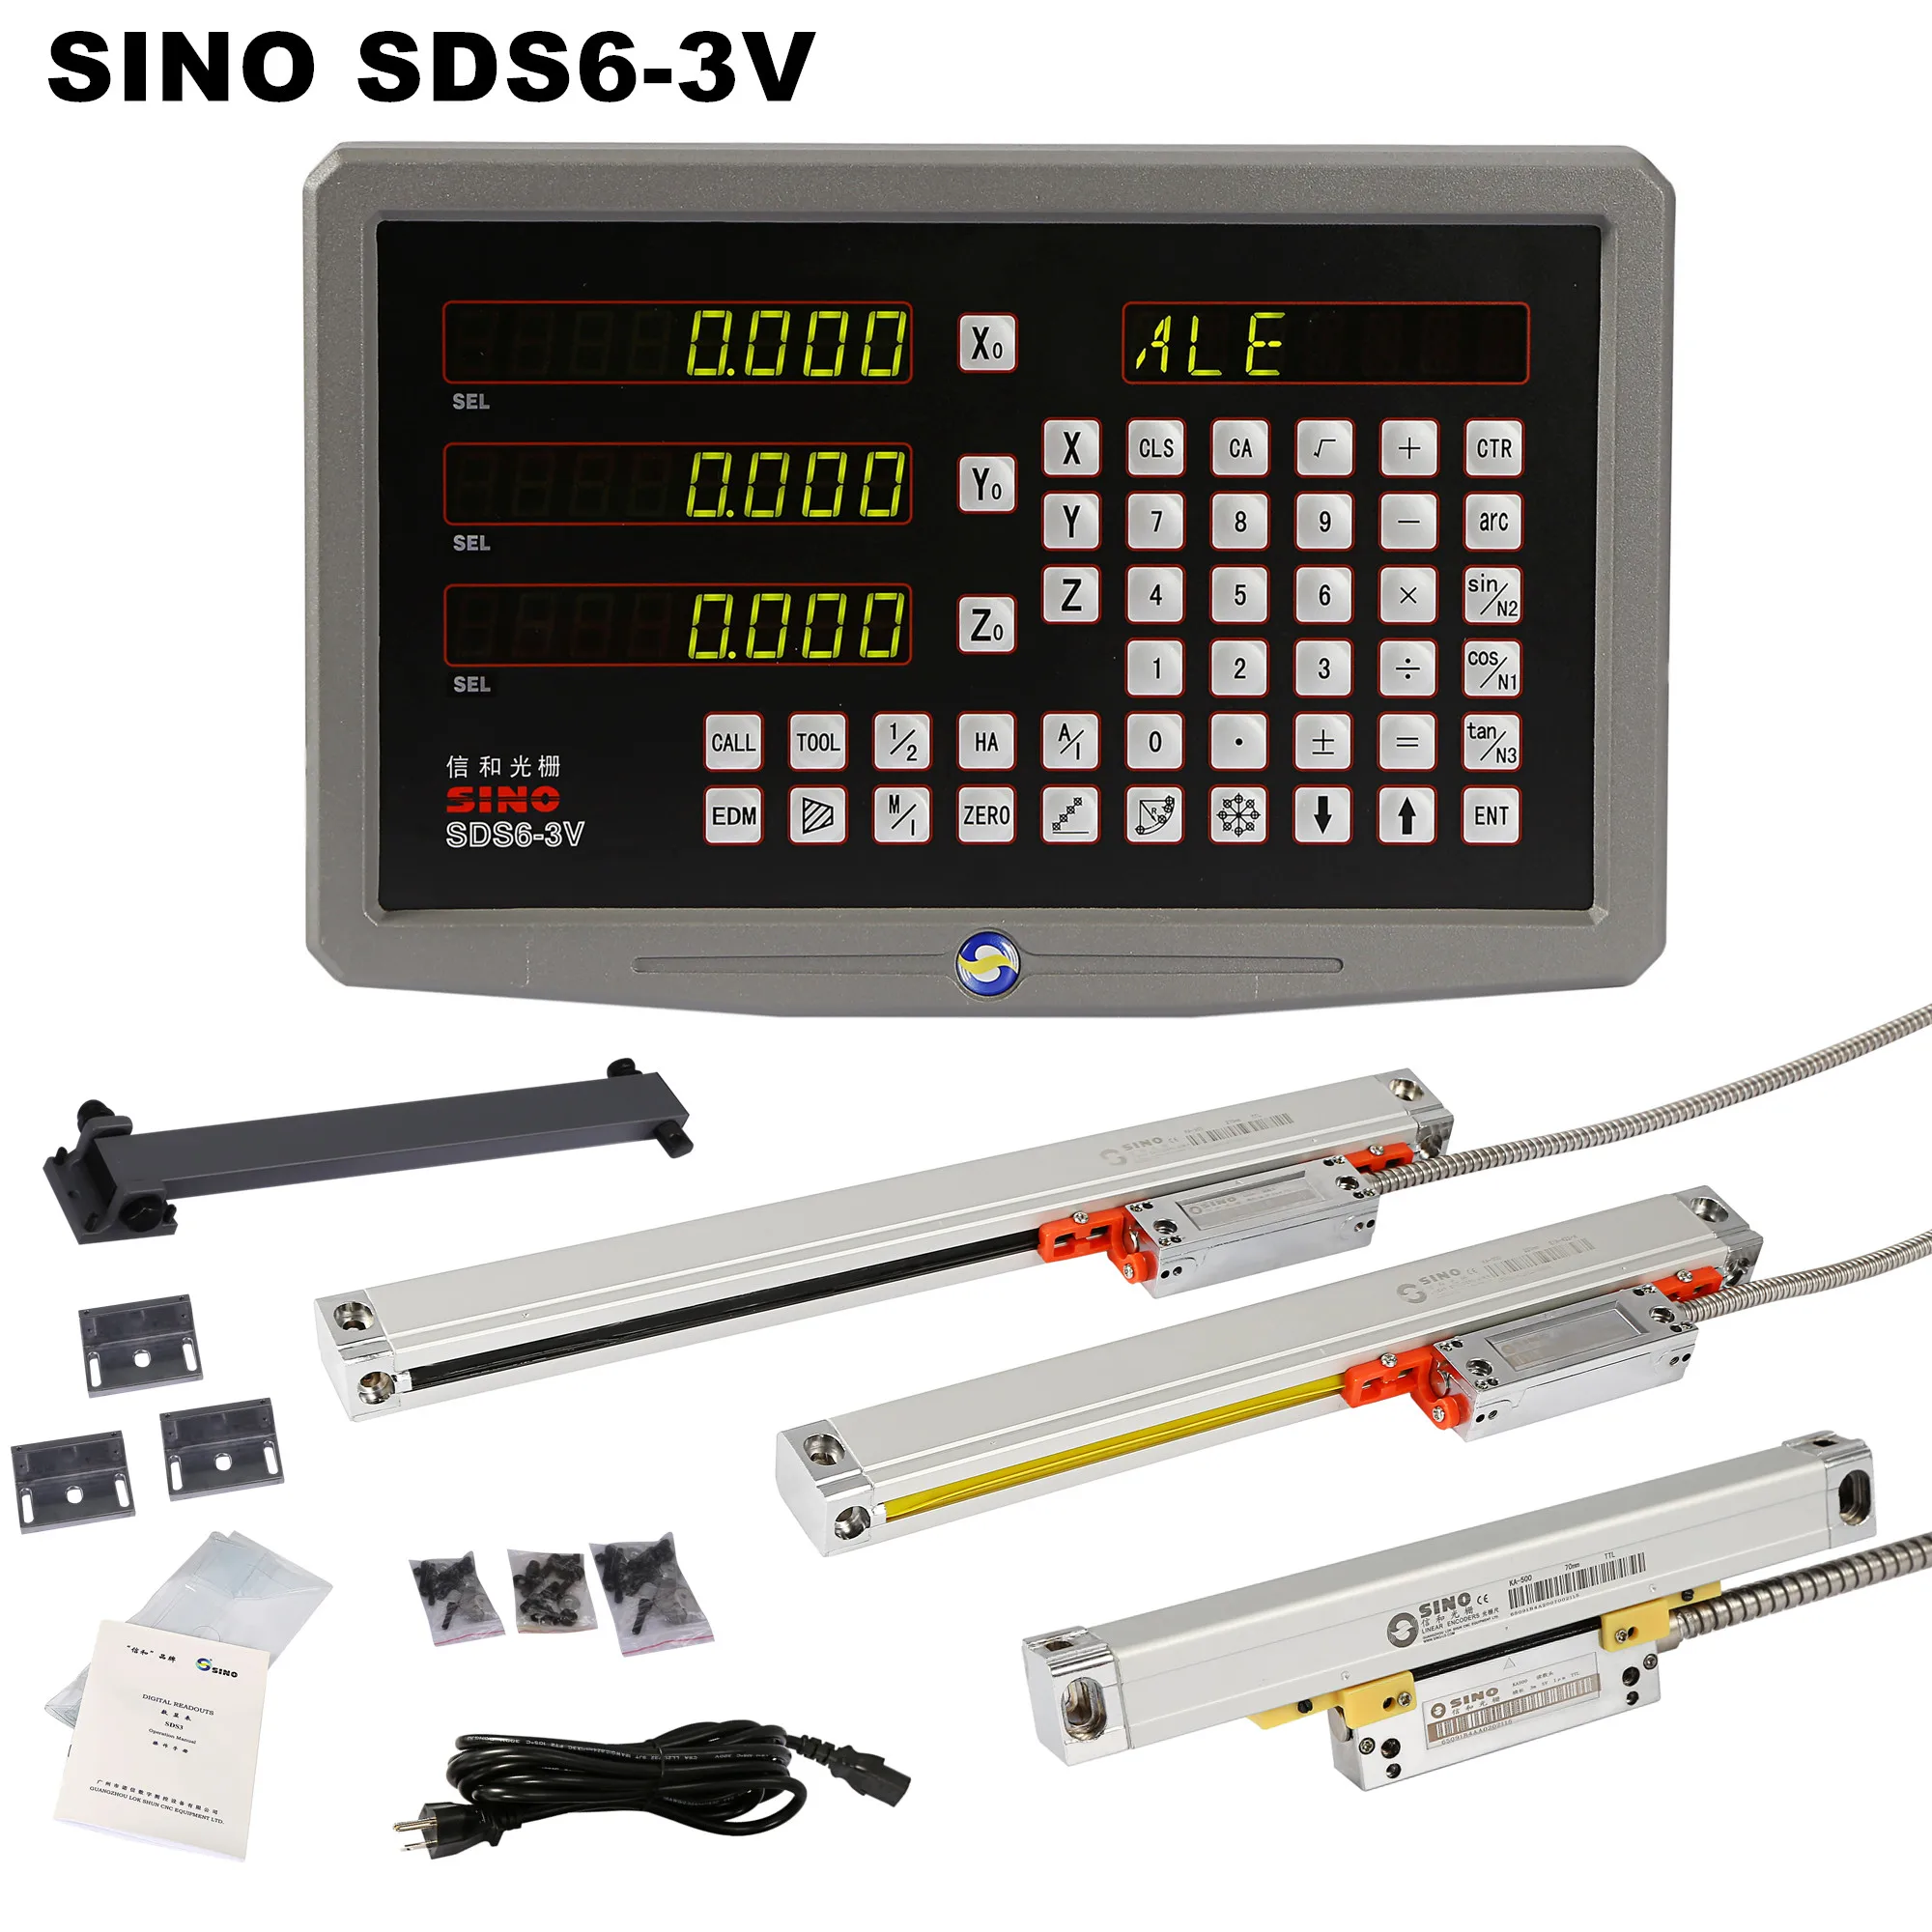 Tanio SINO SDS6-3V metalowa obudowa 3 osi tokarka frezowanie DRO